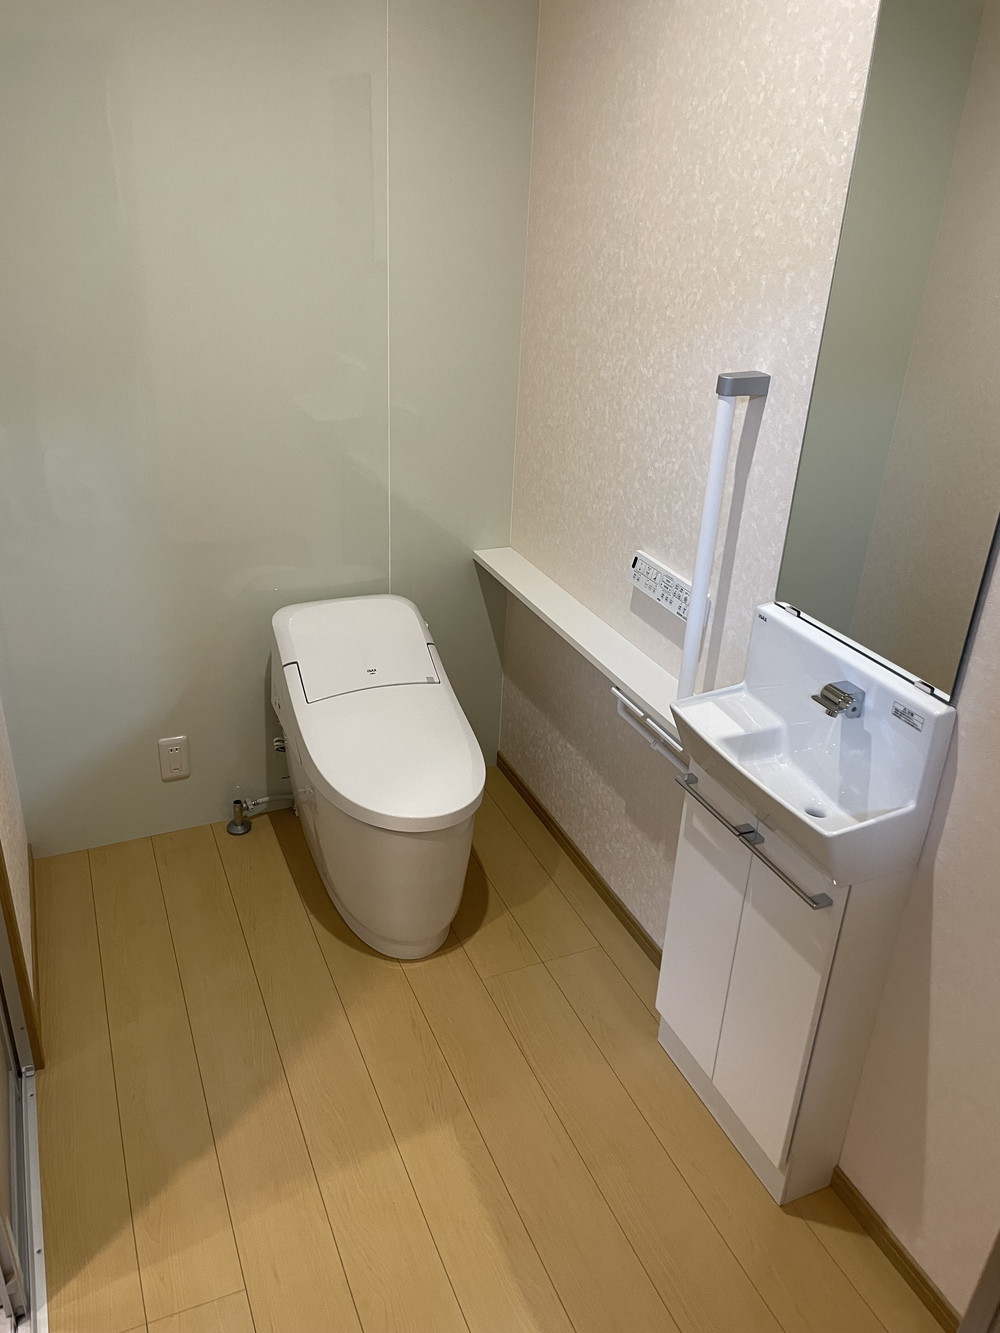 堀川トーヨー住器のT様邸 トイレ改修工事の施工事例詳細写真3